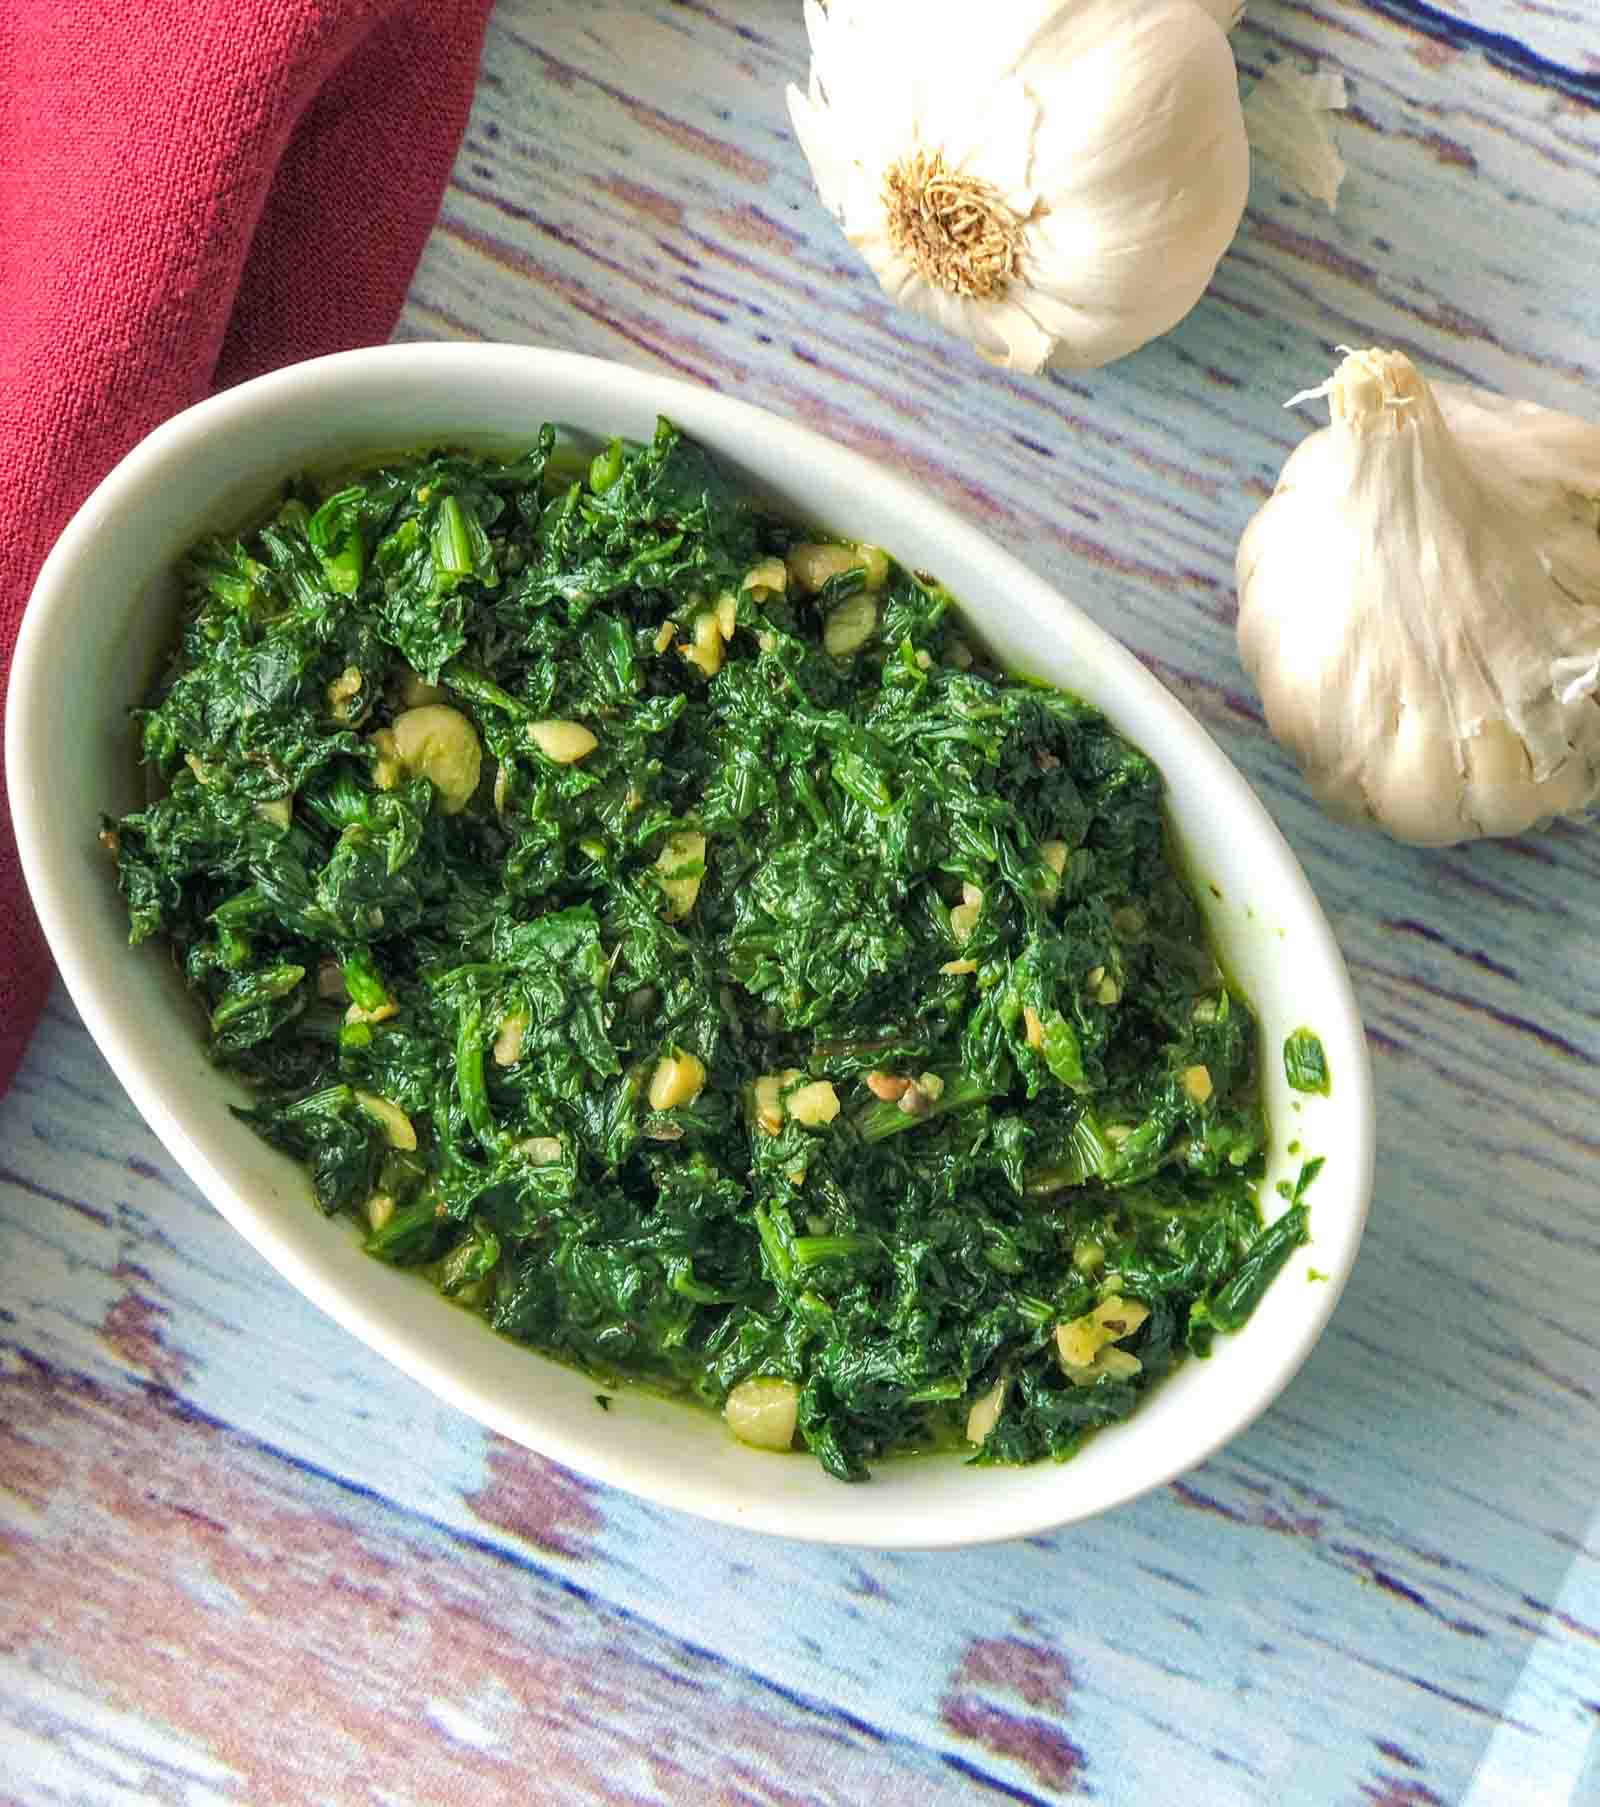 पालक लहसुन स्टिर फ्राई रेसिपी - Spinach Stir Fry Recipe With Garlic